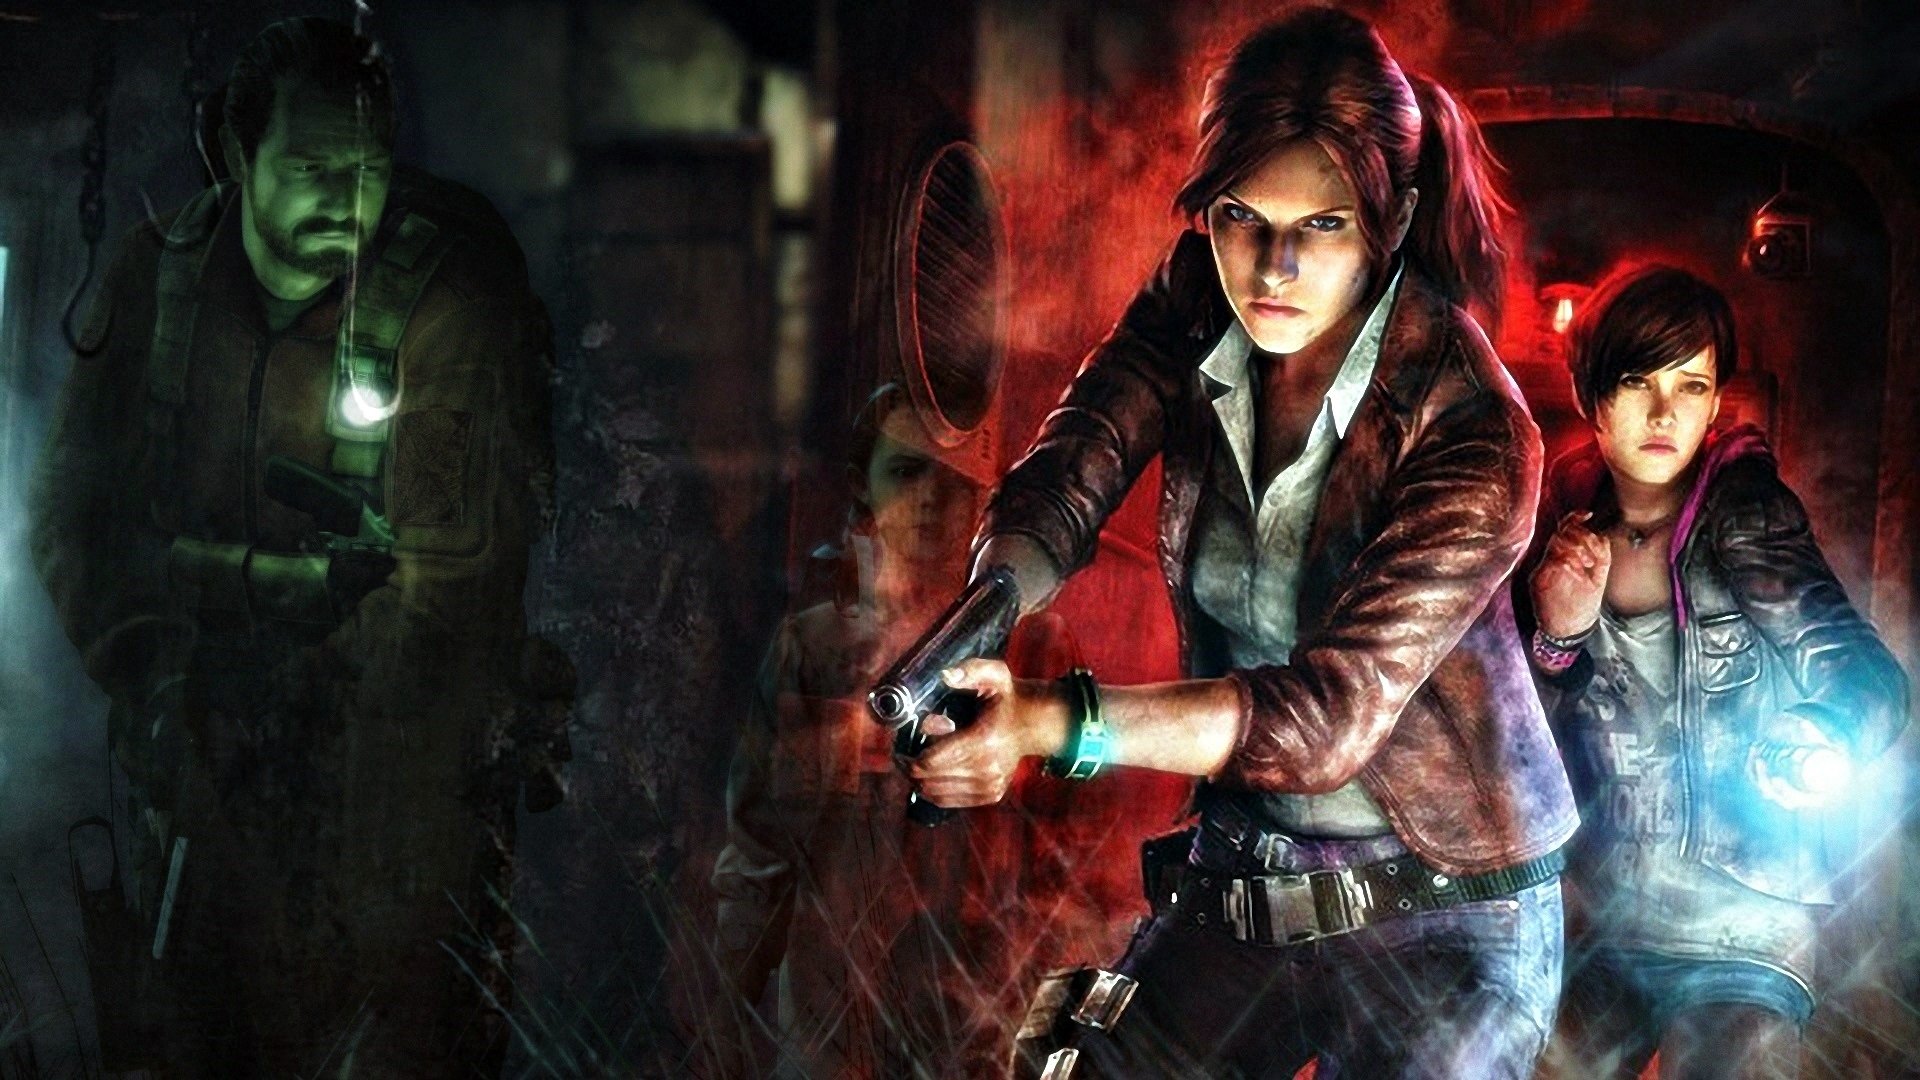 Barry e Claire di Resident Evil 1 e 2 imbracciano le armi